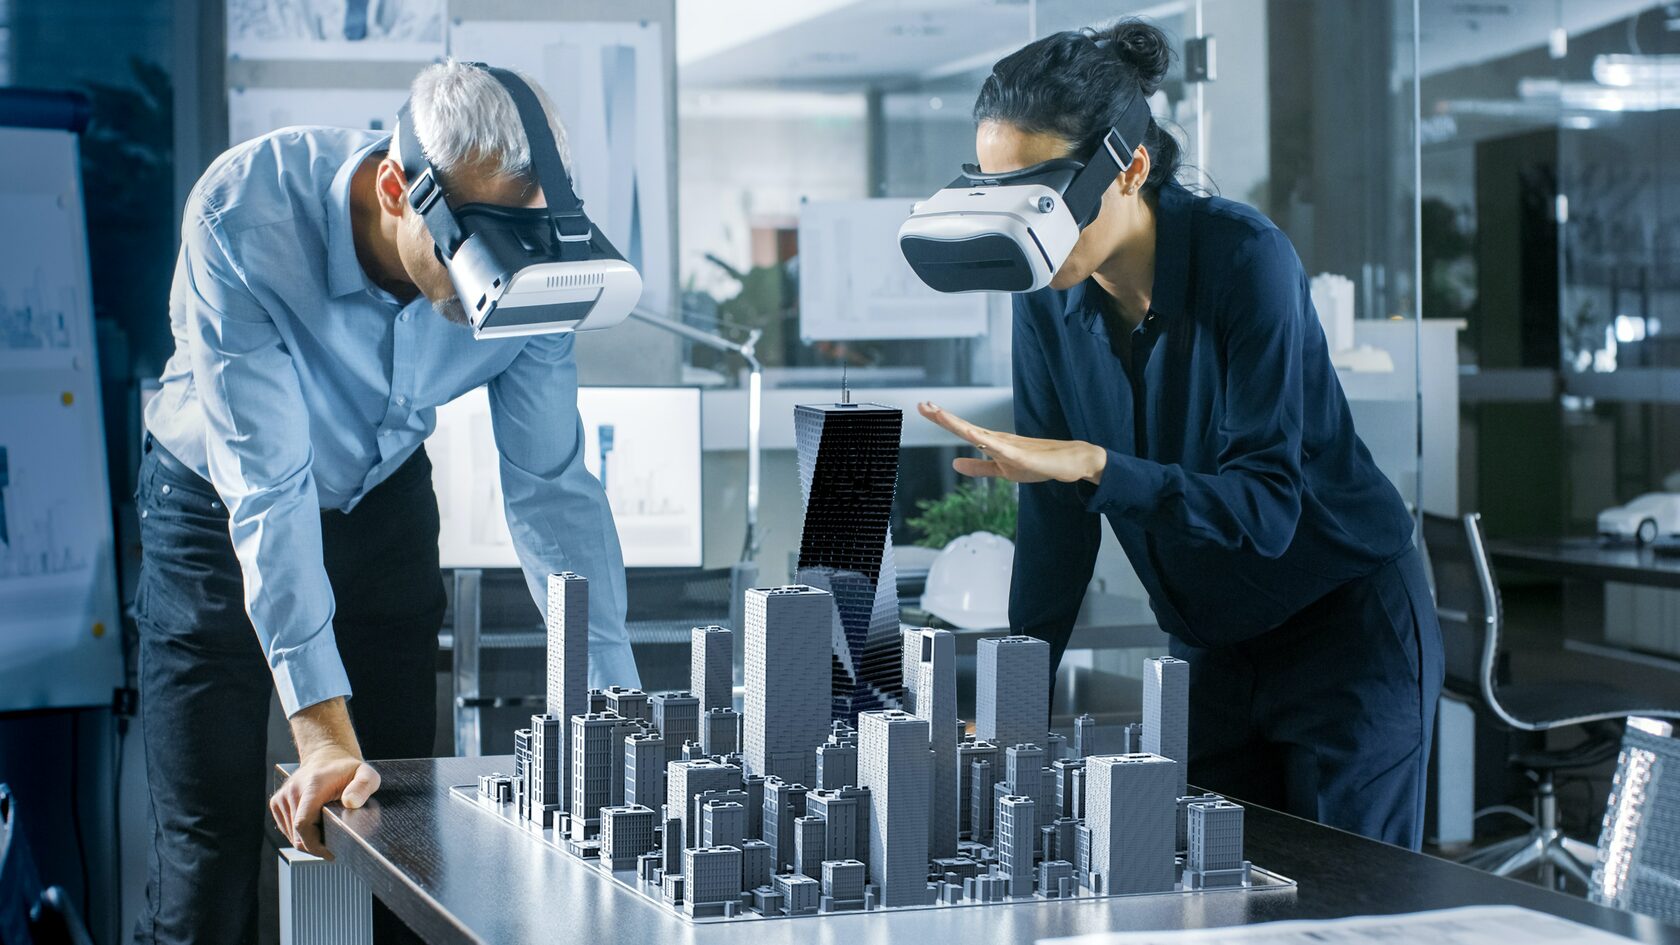 Цифровизация строительной отрасли. Использование технологий виртуальной и дополненной реальности, дронов, 3D-печати и других инноваций